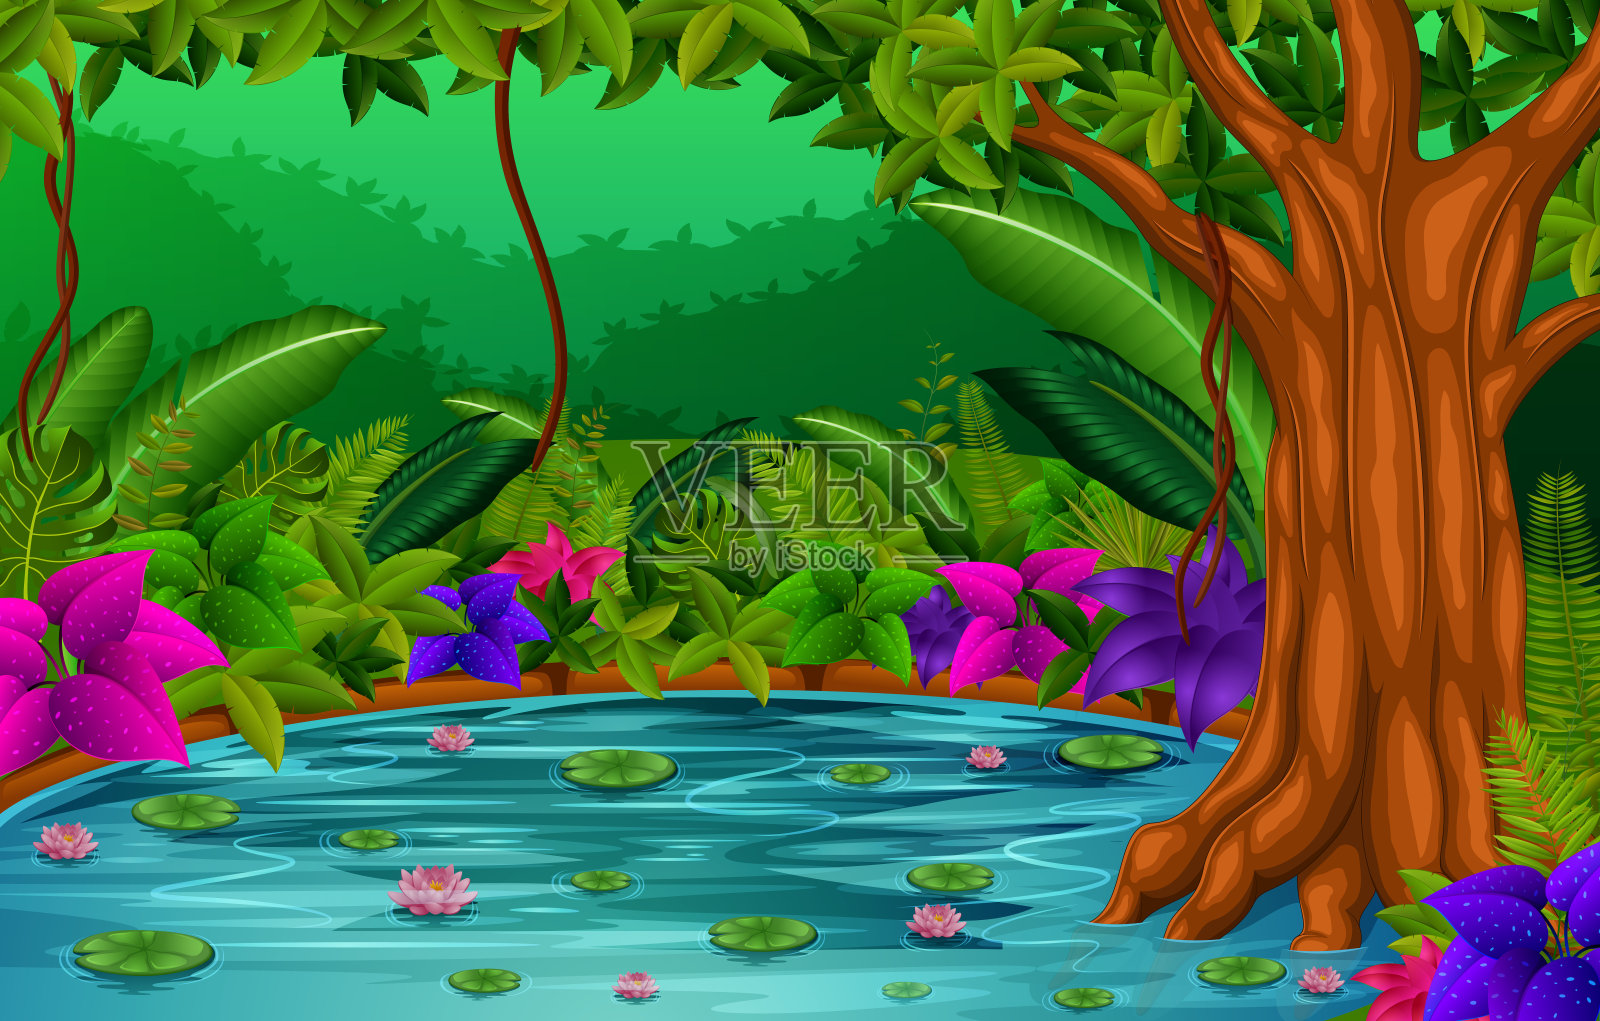 森林湖景插画图片素材